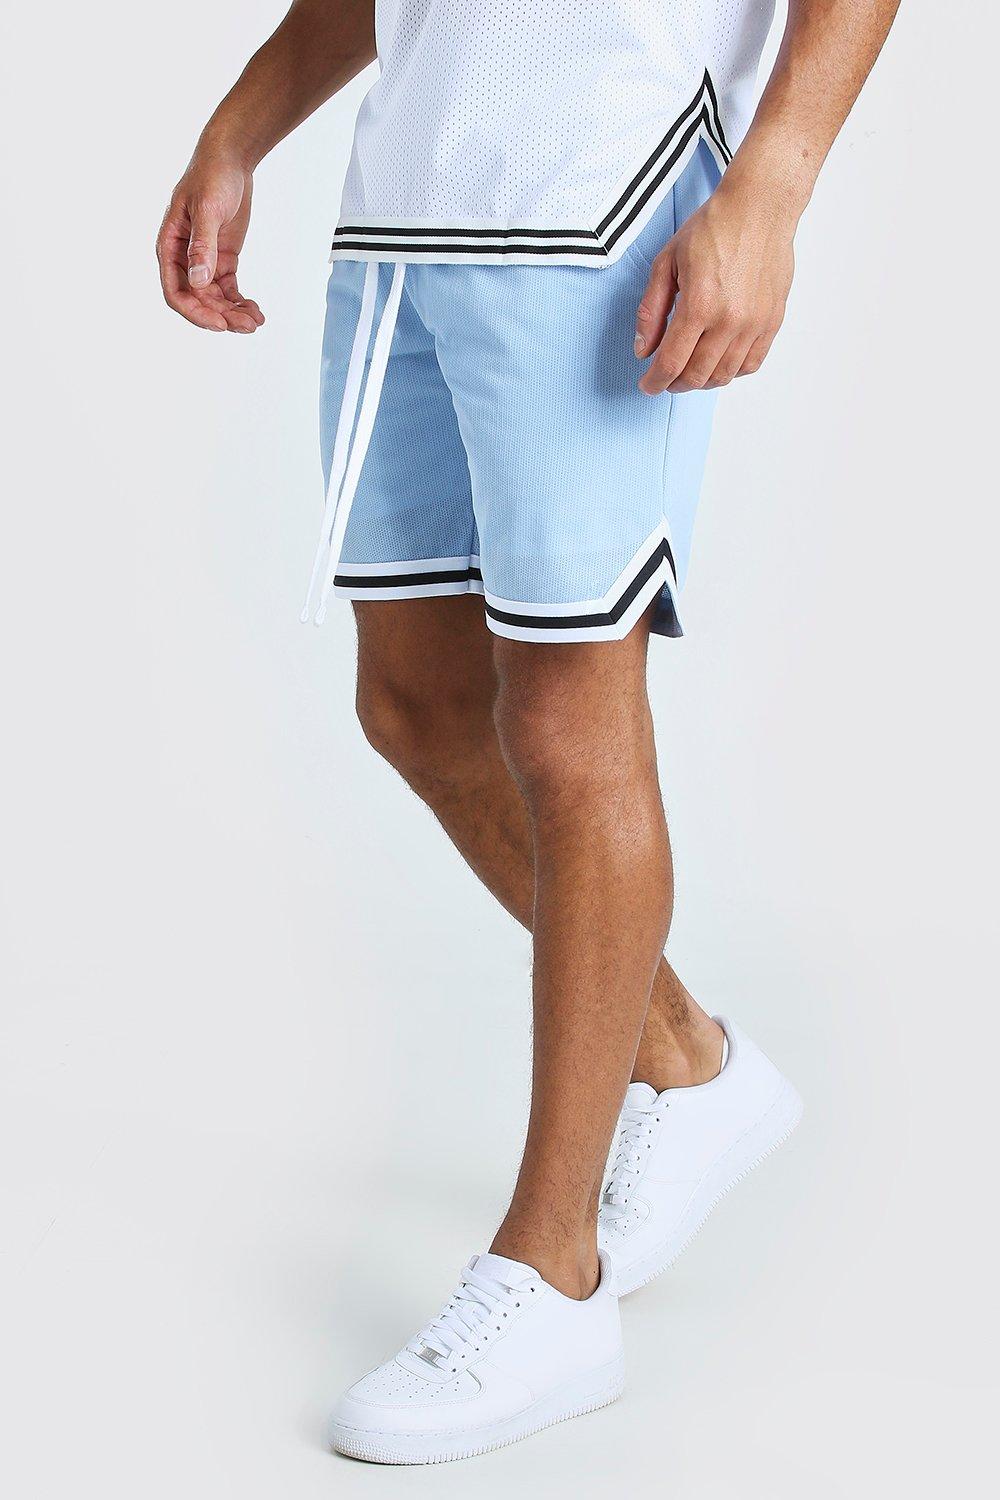 Kleding Gender-neutrale kleding volwassenen Shorts mint kort bruine mesh kort witte short blauwe mesh kort Kleurrijke Mesh Basketbal Shorts 